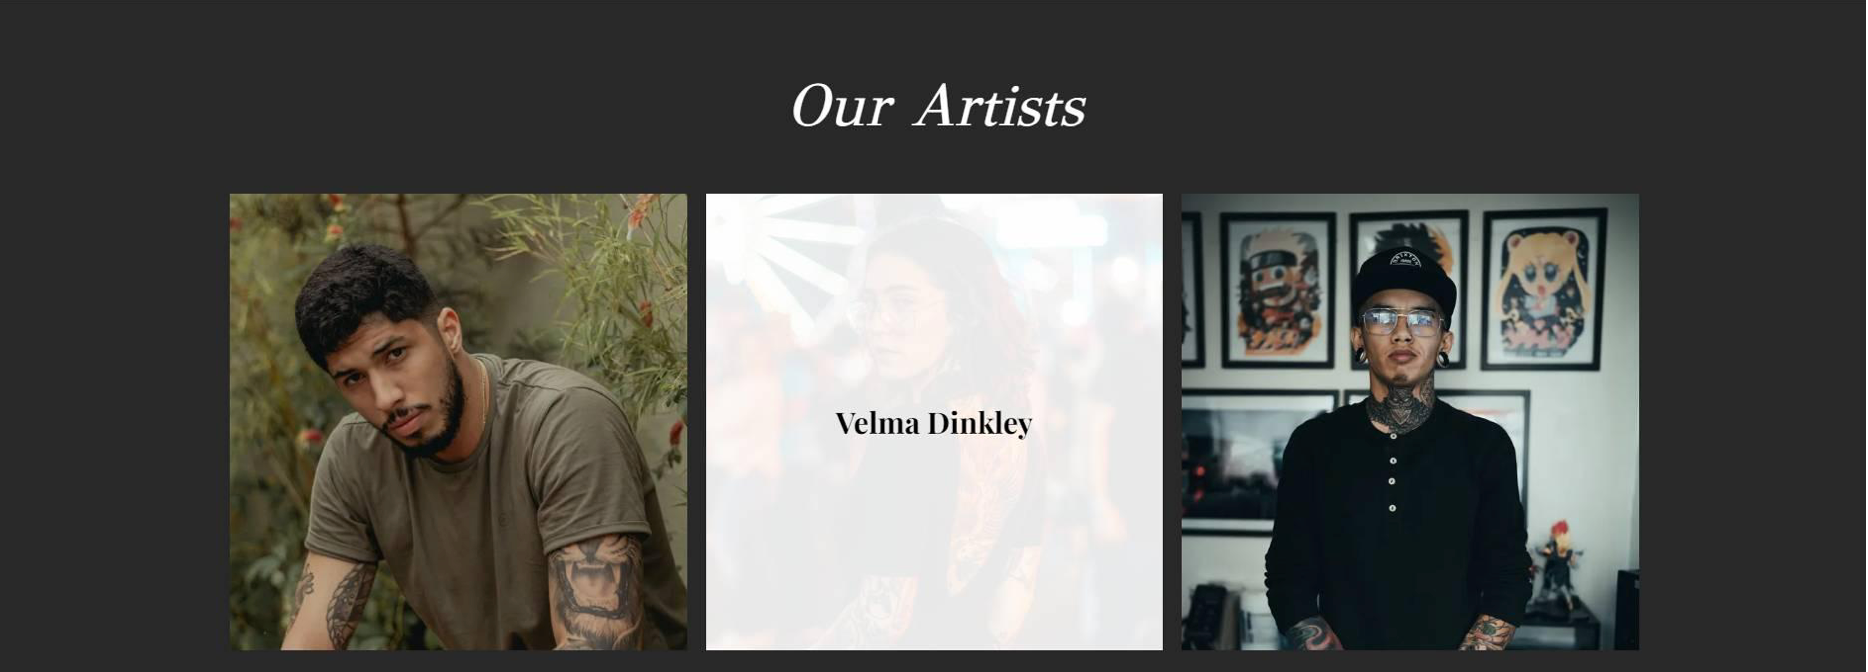 Tattoo artists website template